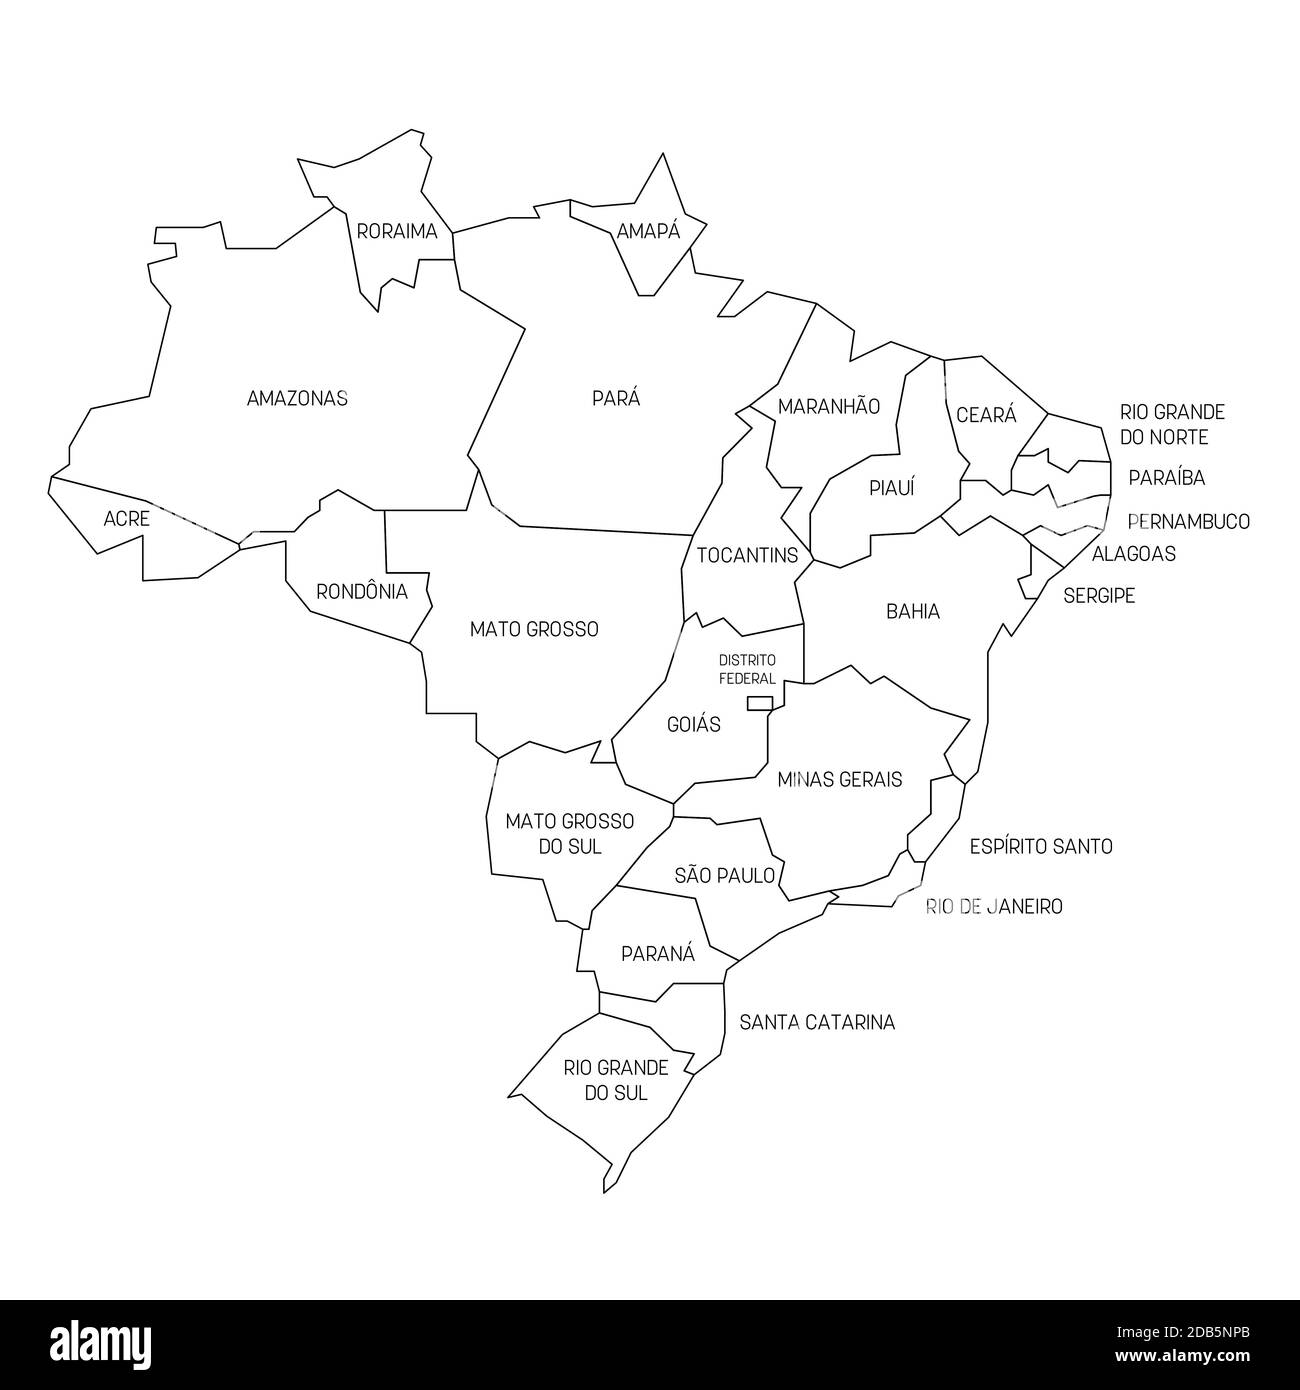 Schwarze Umrisse politische Karte von Brasilien. Verwaltungsabteilungen - Staaten. Einfache Vektorkarte mit Beschriftungen. Stock Vektor